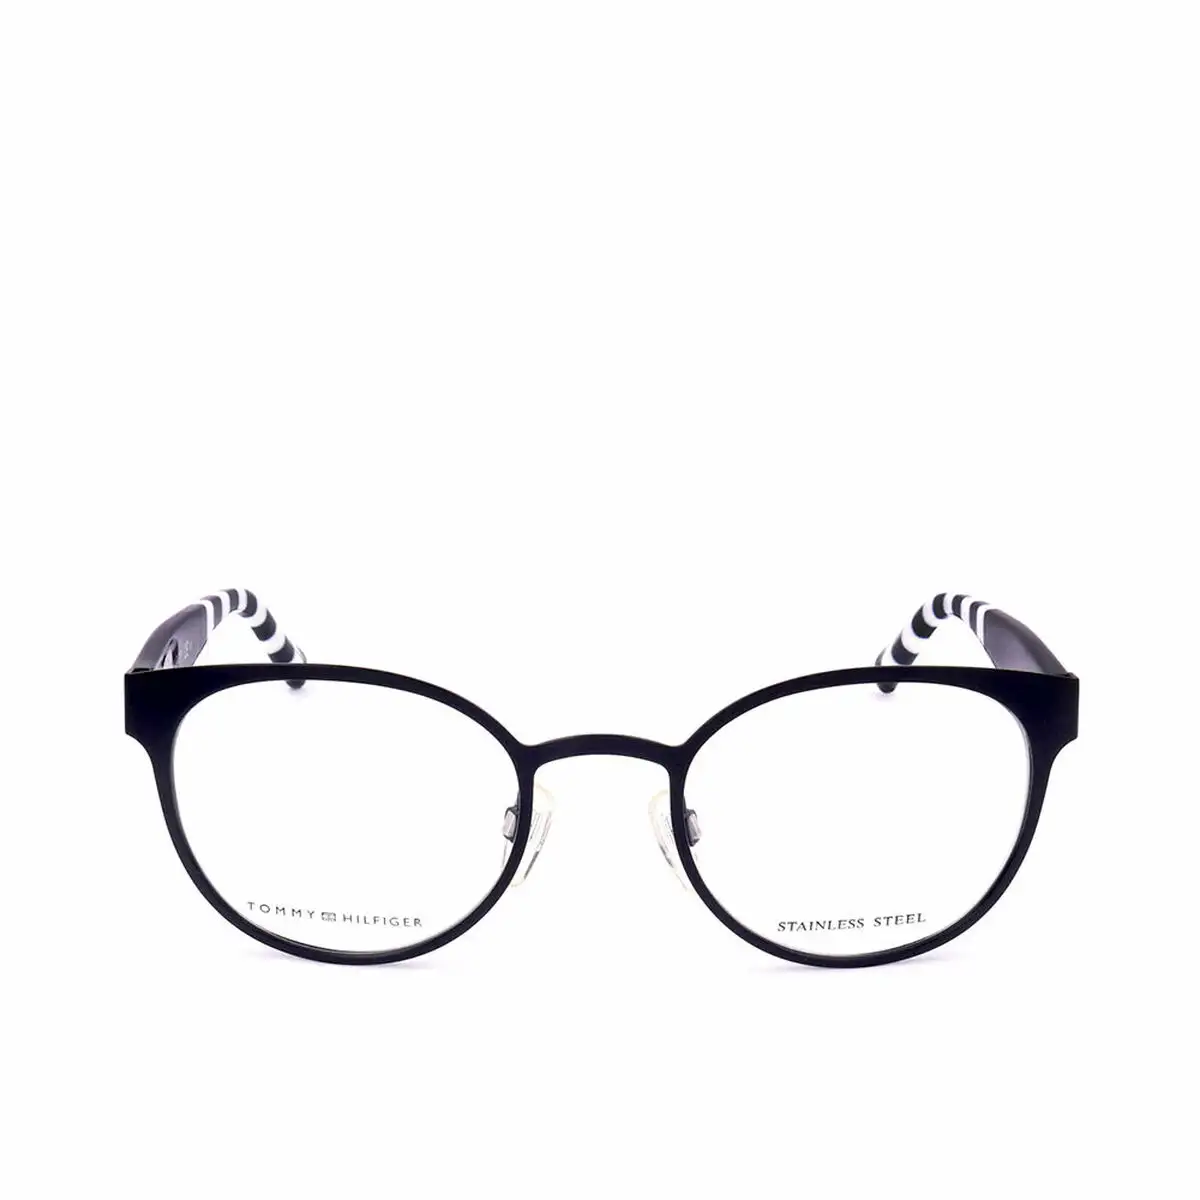 Monture de lunettes tommy hilfiger th pjp o 49 mm_4980. Bienvenue sur DIAYTAR SENEGAL - Votre Source de Trouvailles Uniques. Explorez nos rayons virtuels pour dénicher des trésors que vous ne trouverez nulle part ailleurs, allant des trésors artisanaux aux articles tendance.